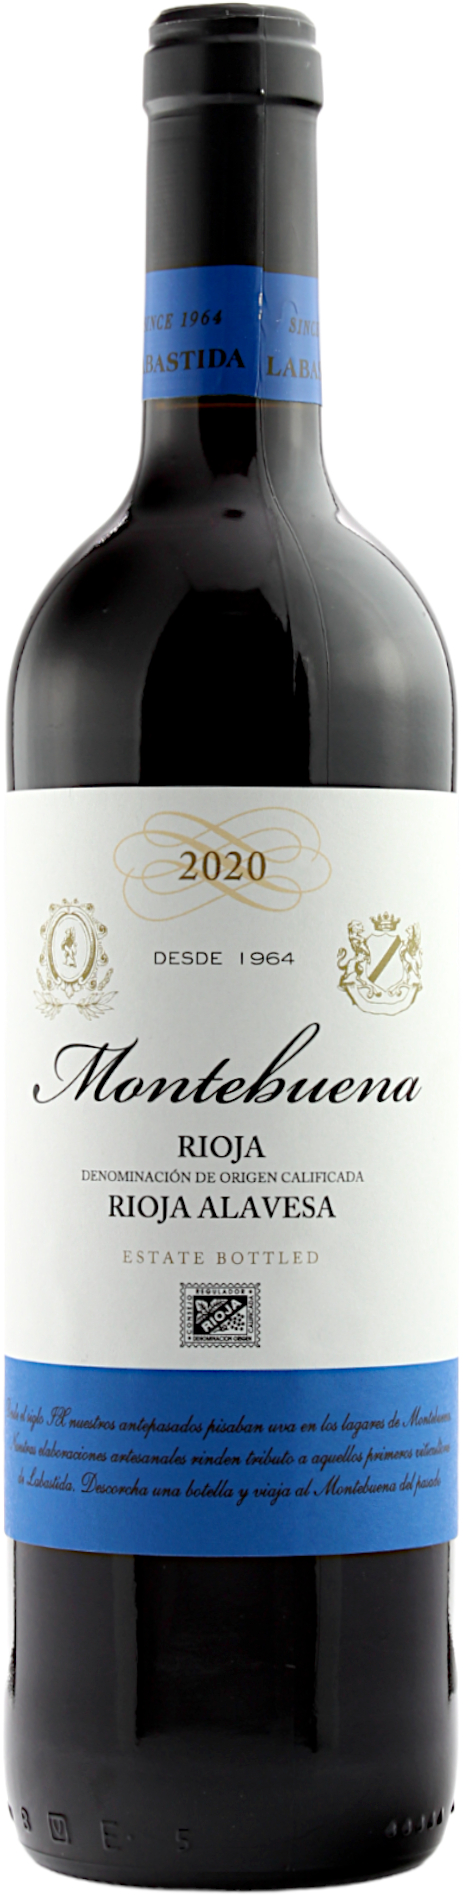 Rioja Montebuena Madurado DOCa 2020 13.5% 0,75l